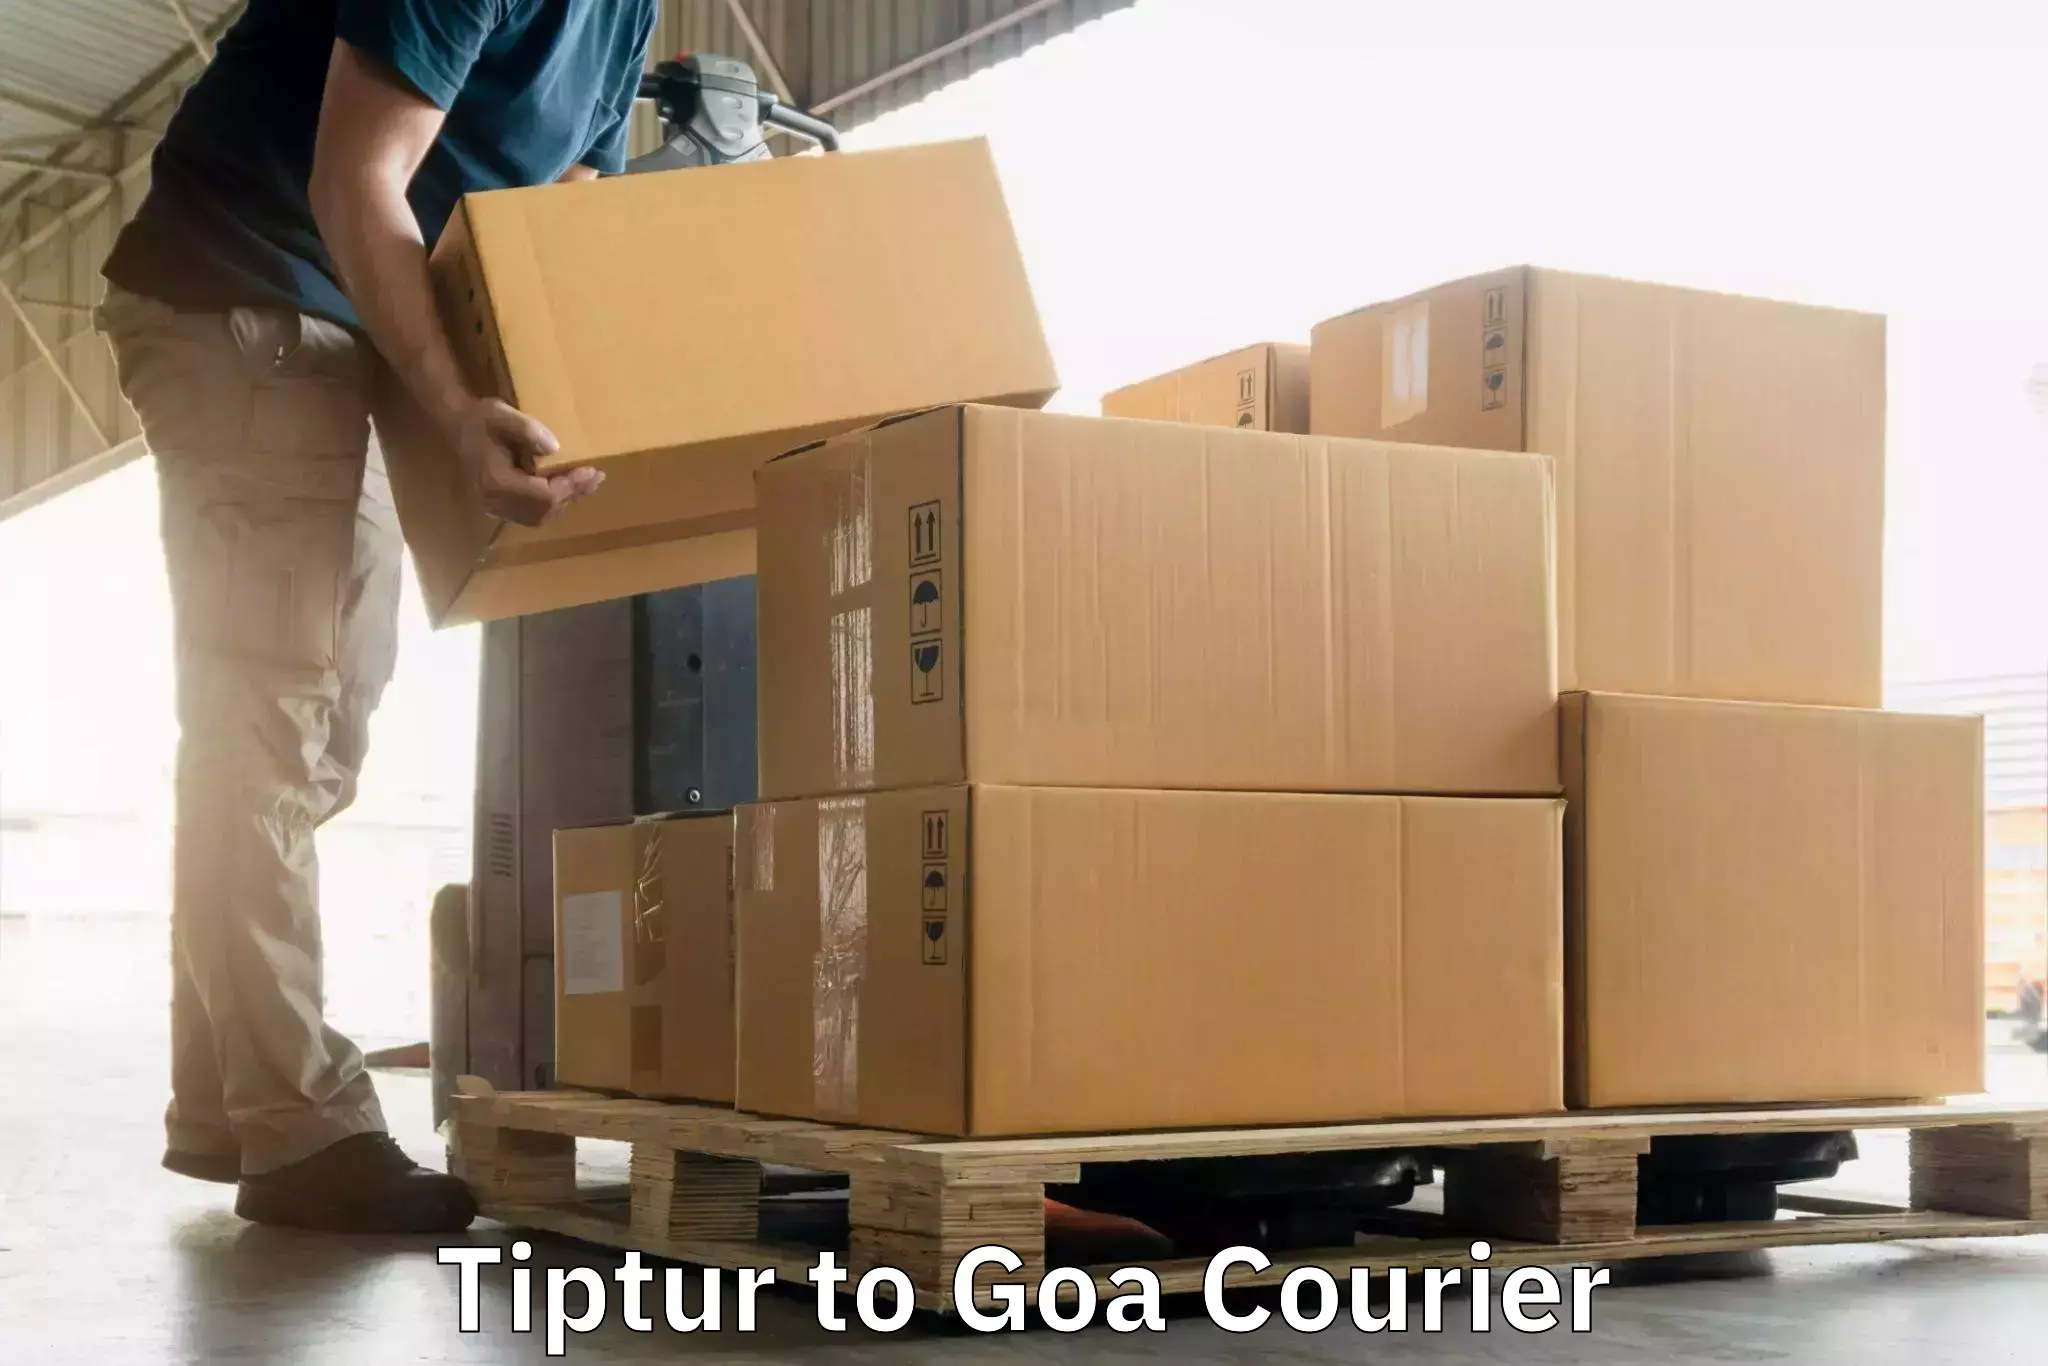 High-capacity parcel service Tiptur to Vasco da Gama